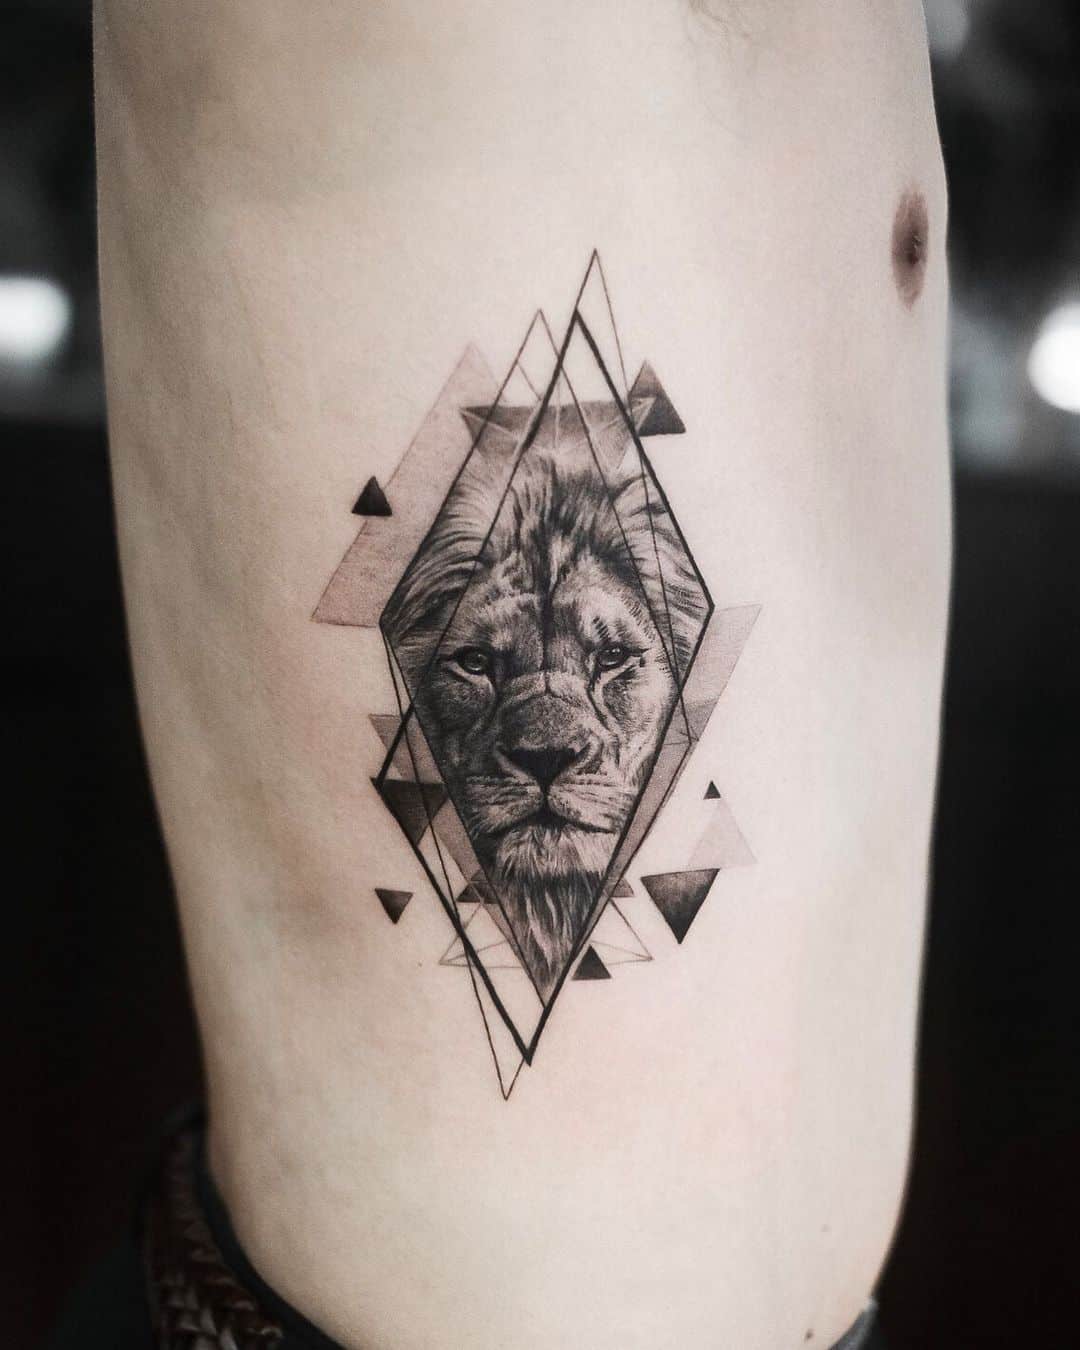 Lion tattoo by oottatjac